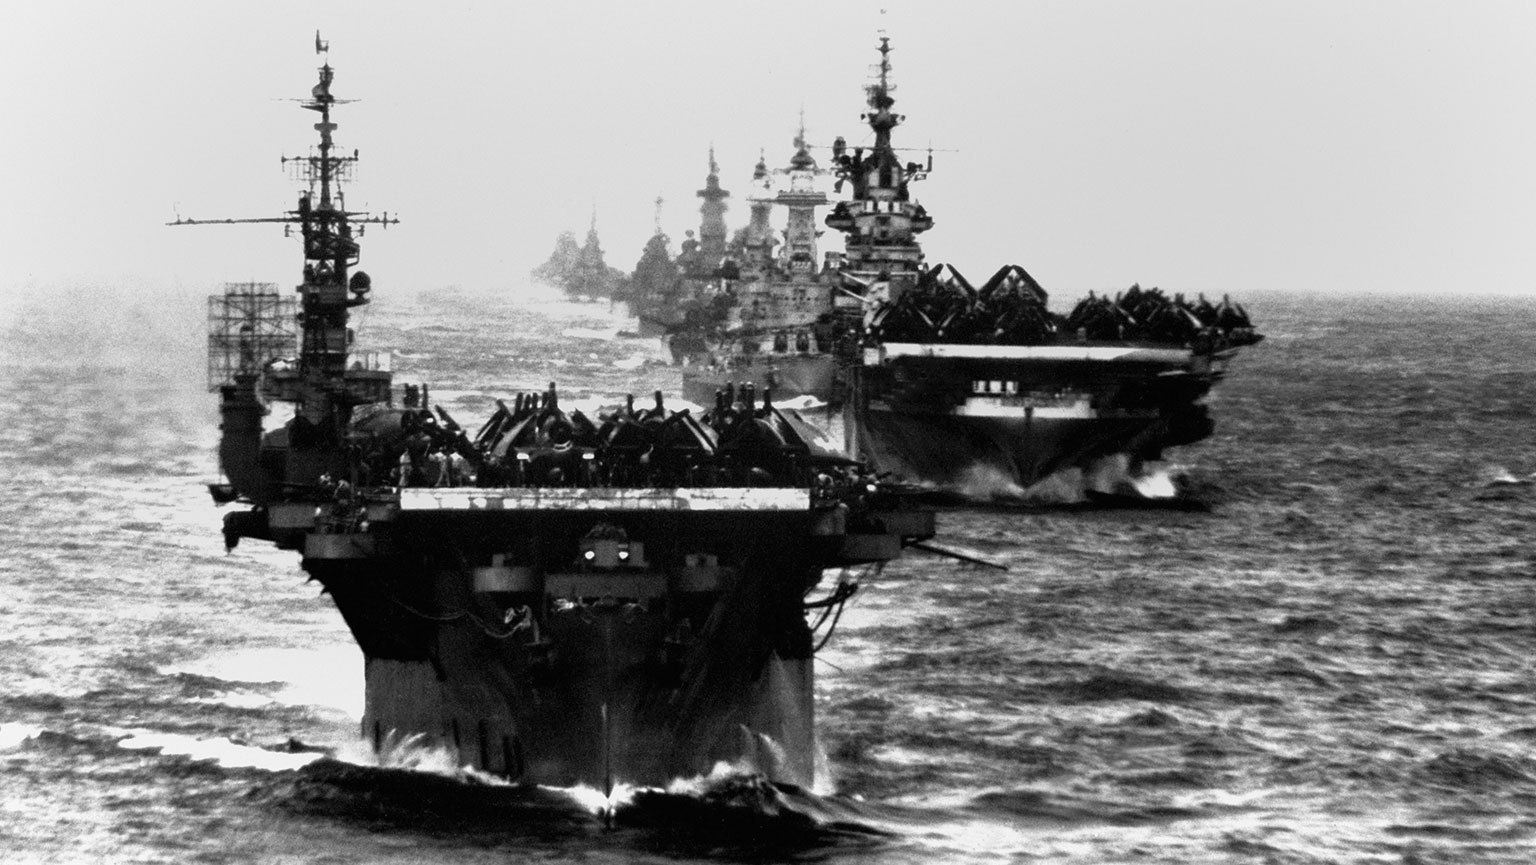 us navy carier sunk in vietnam war